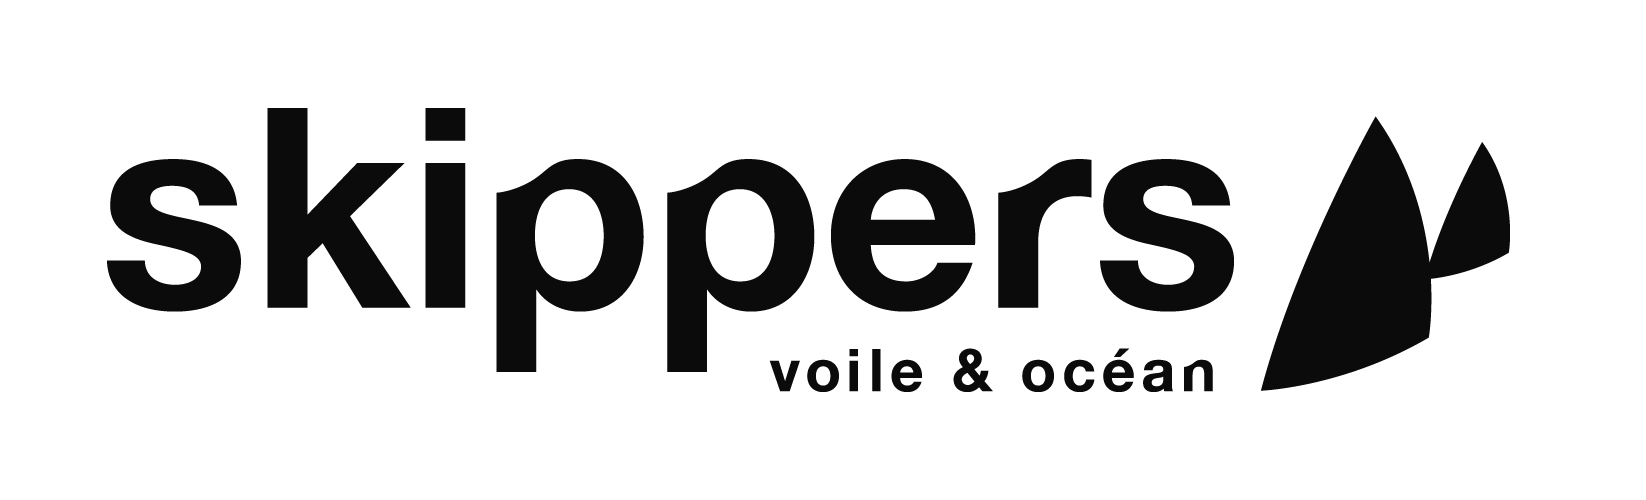 Skipper_logo